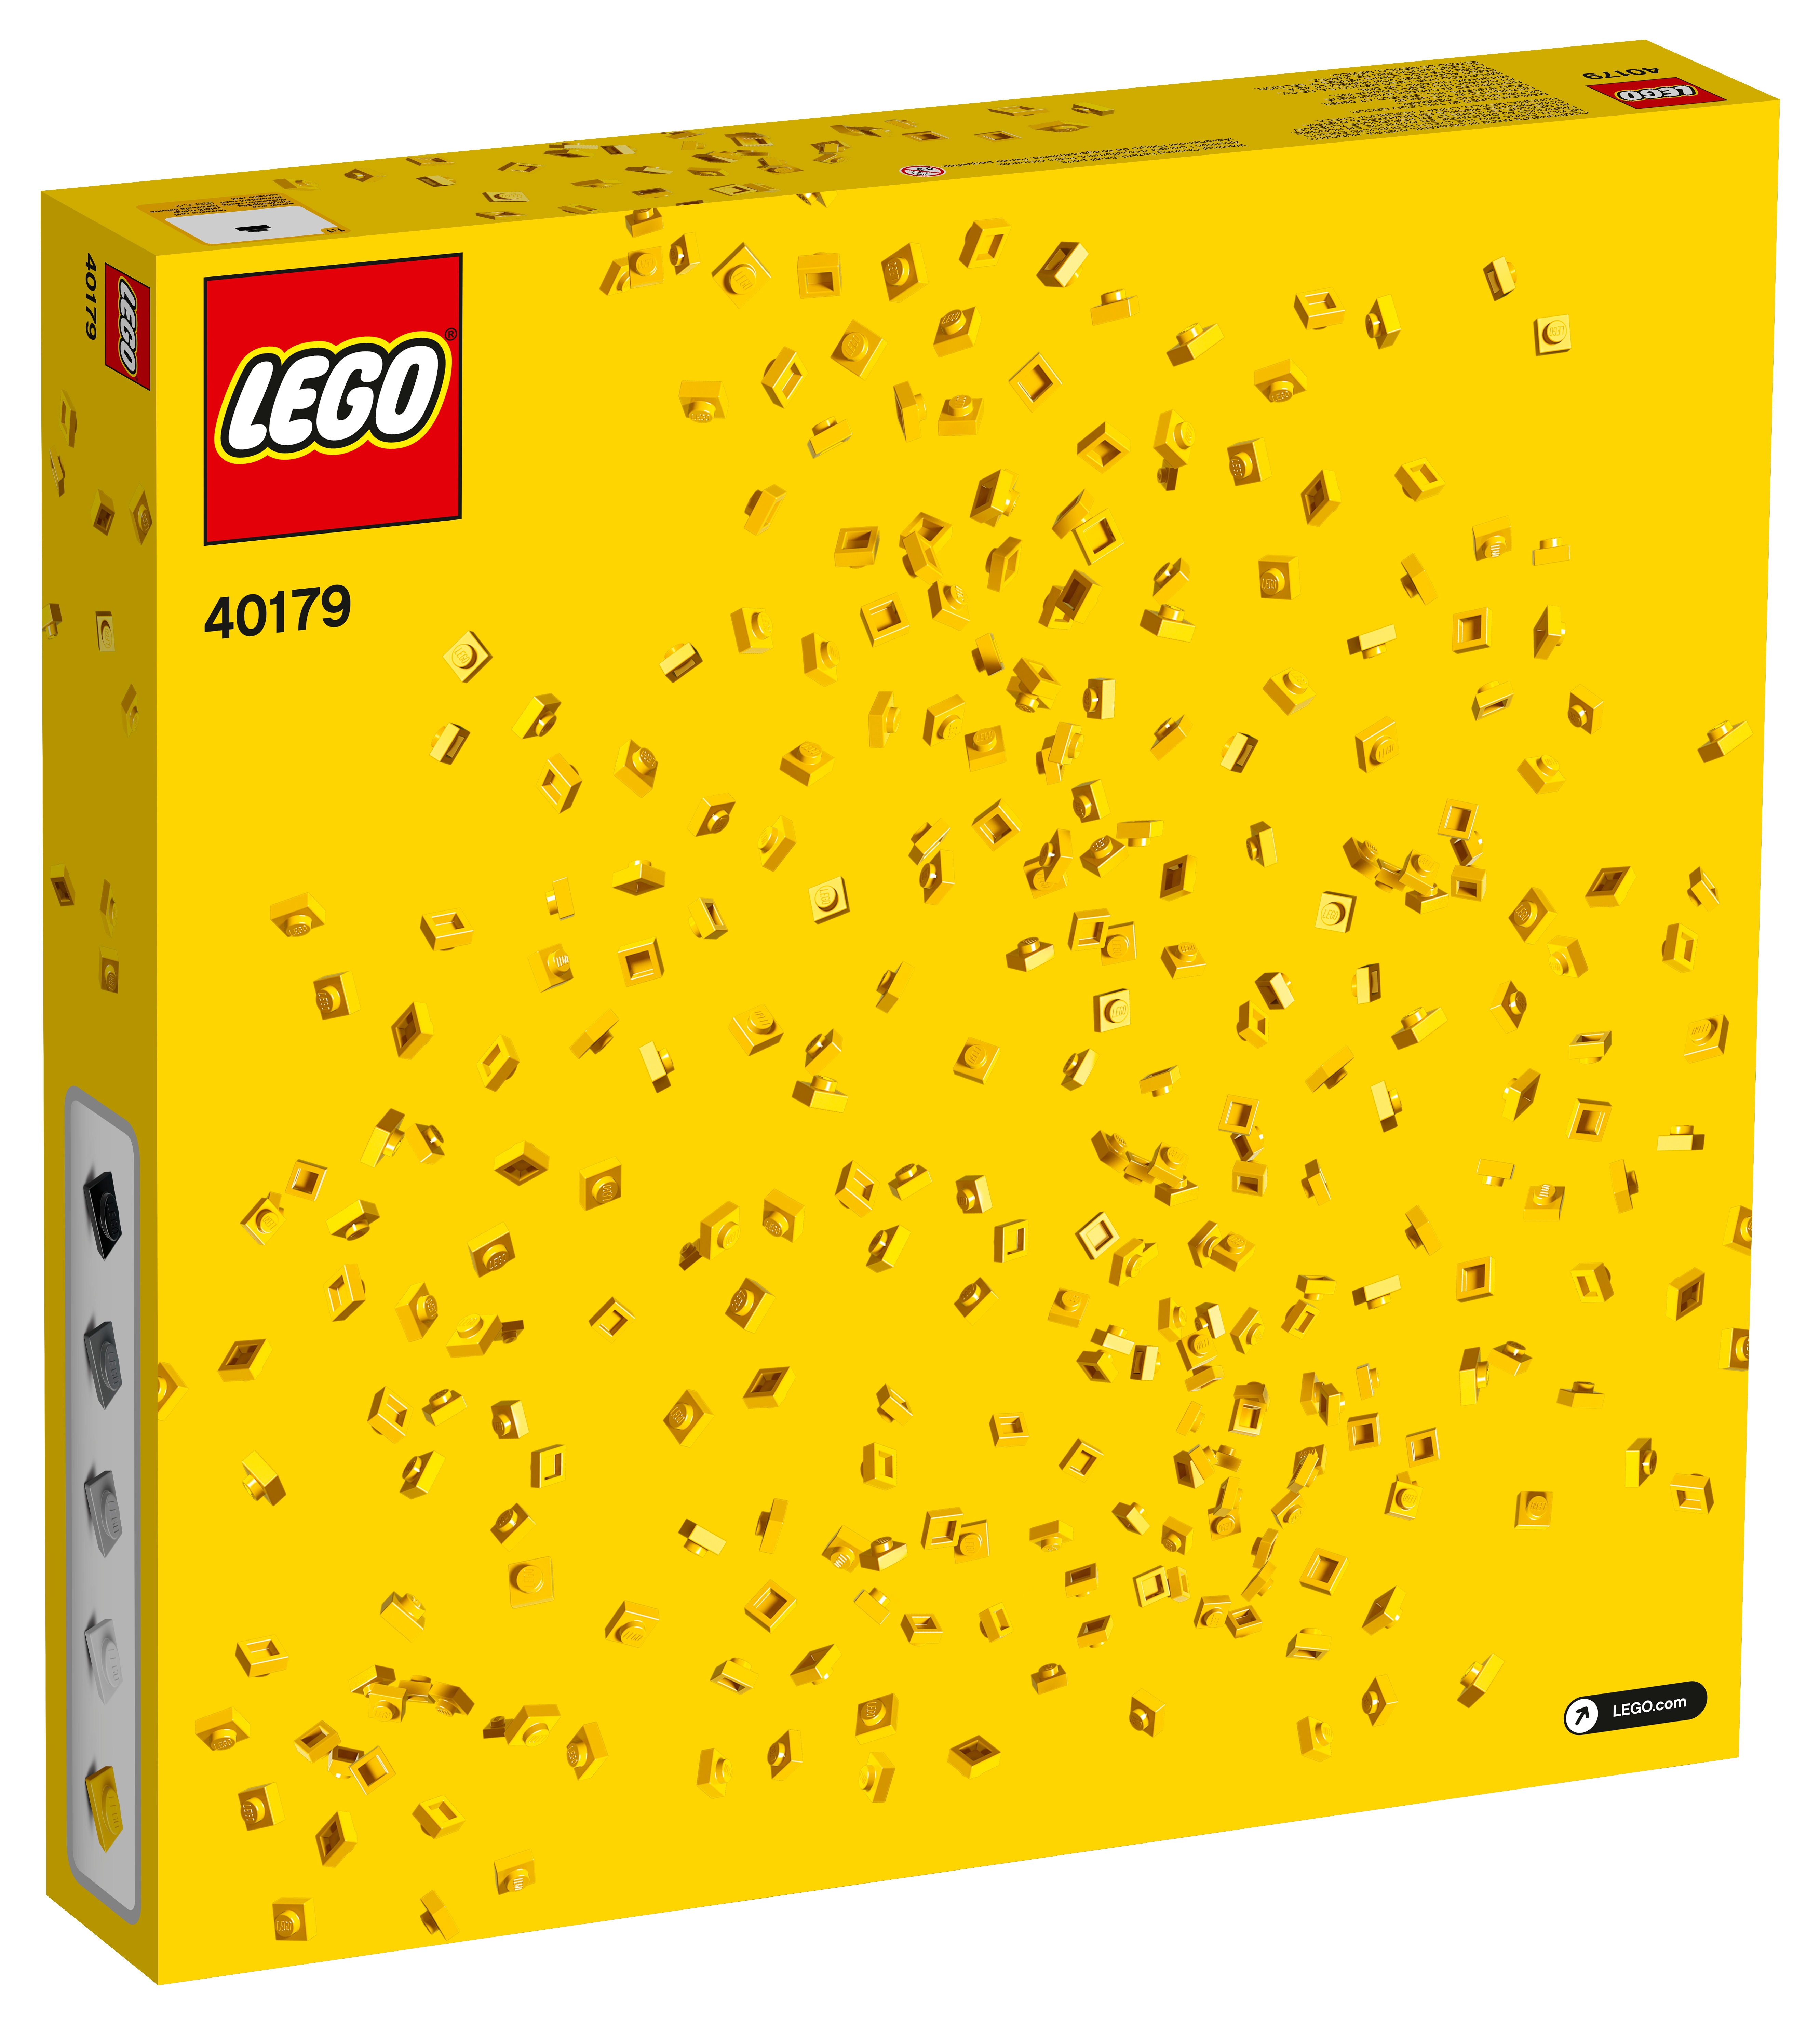 LEGO Art on the Wall - lego  Lego creative, Lego diy crafts, Lego wall art